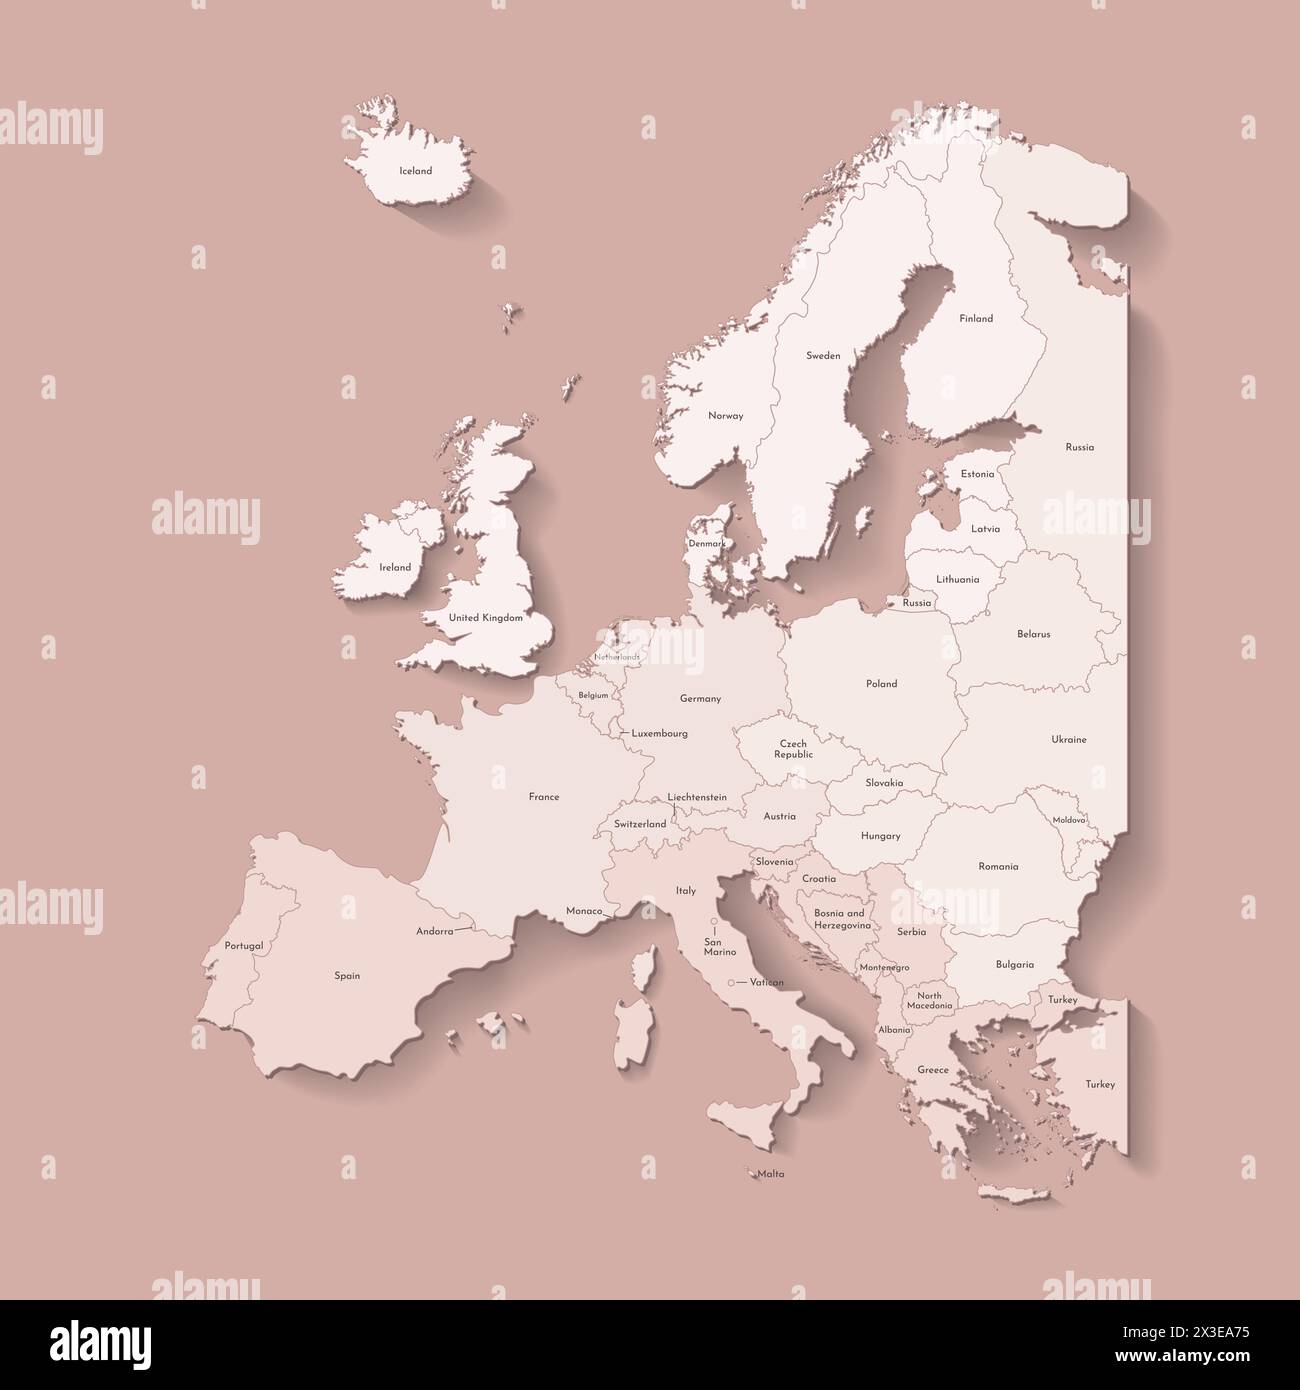 Illustrazione vettoriale con il continente europeo con confini di paesi e nomi di stati. Mappa politica di colore marrone con regioni. Sfondo beige Illustrazione Vettoriale